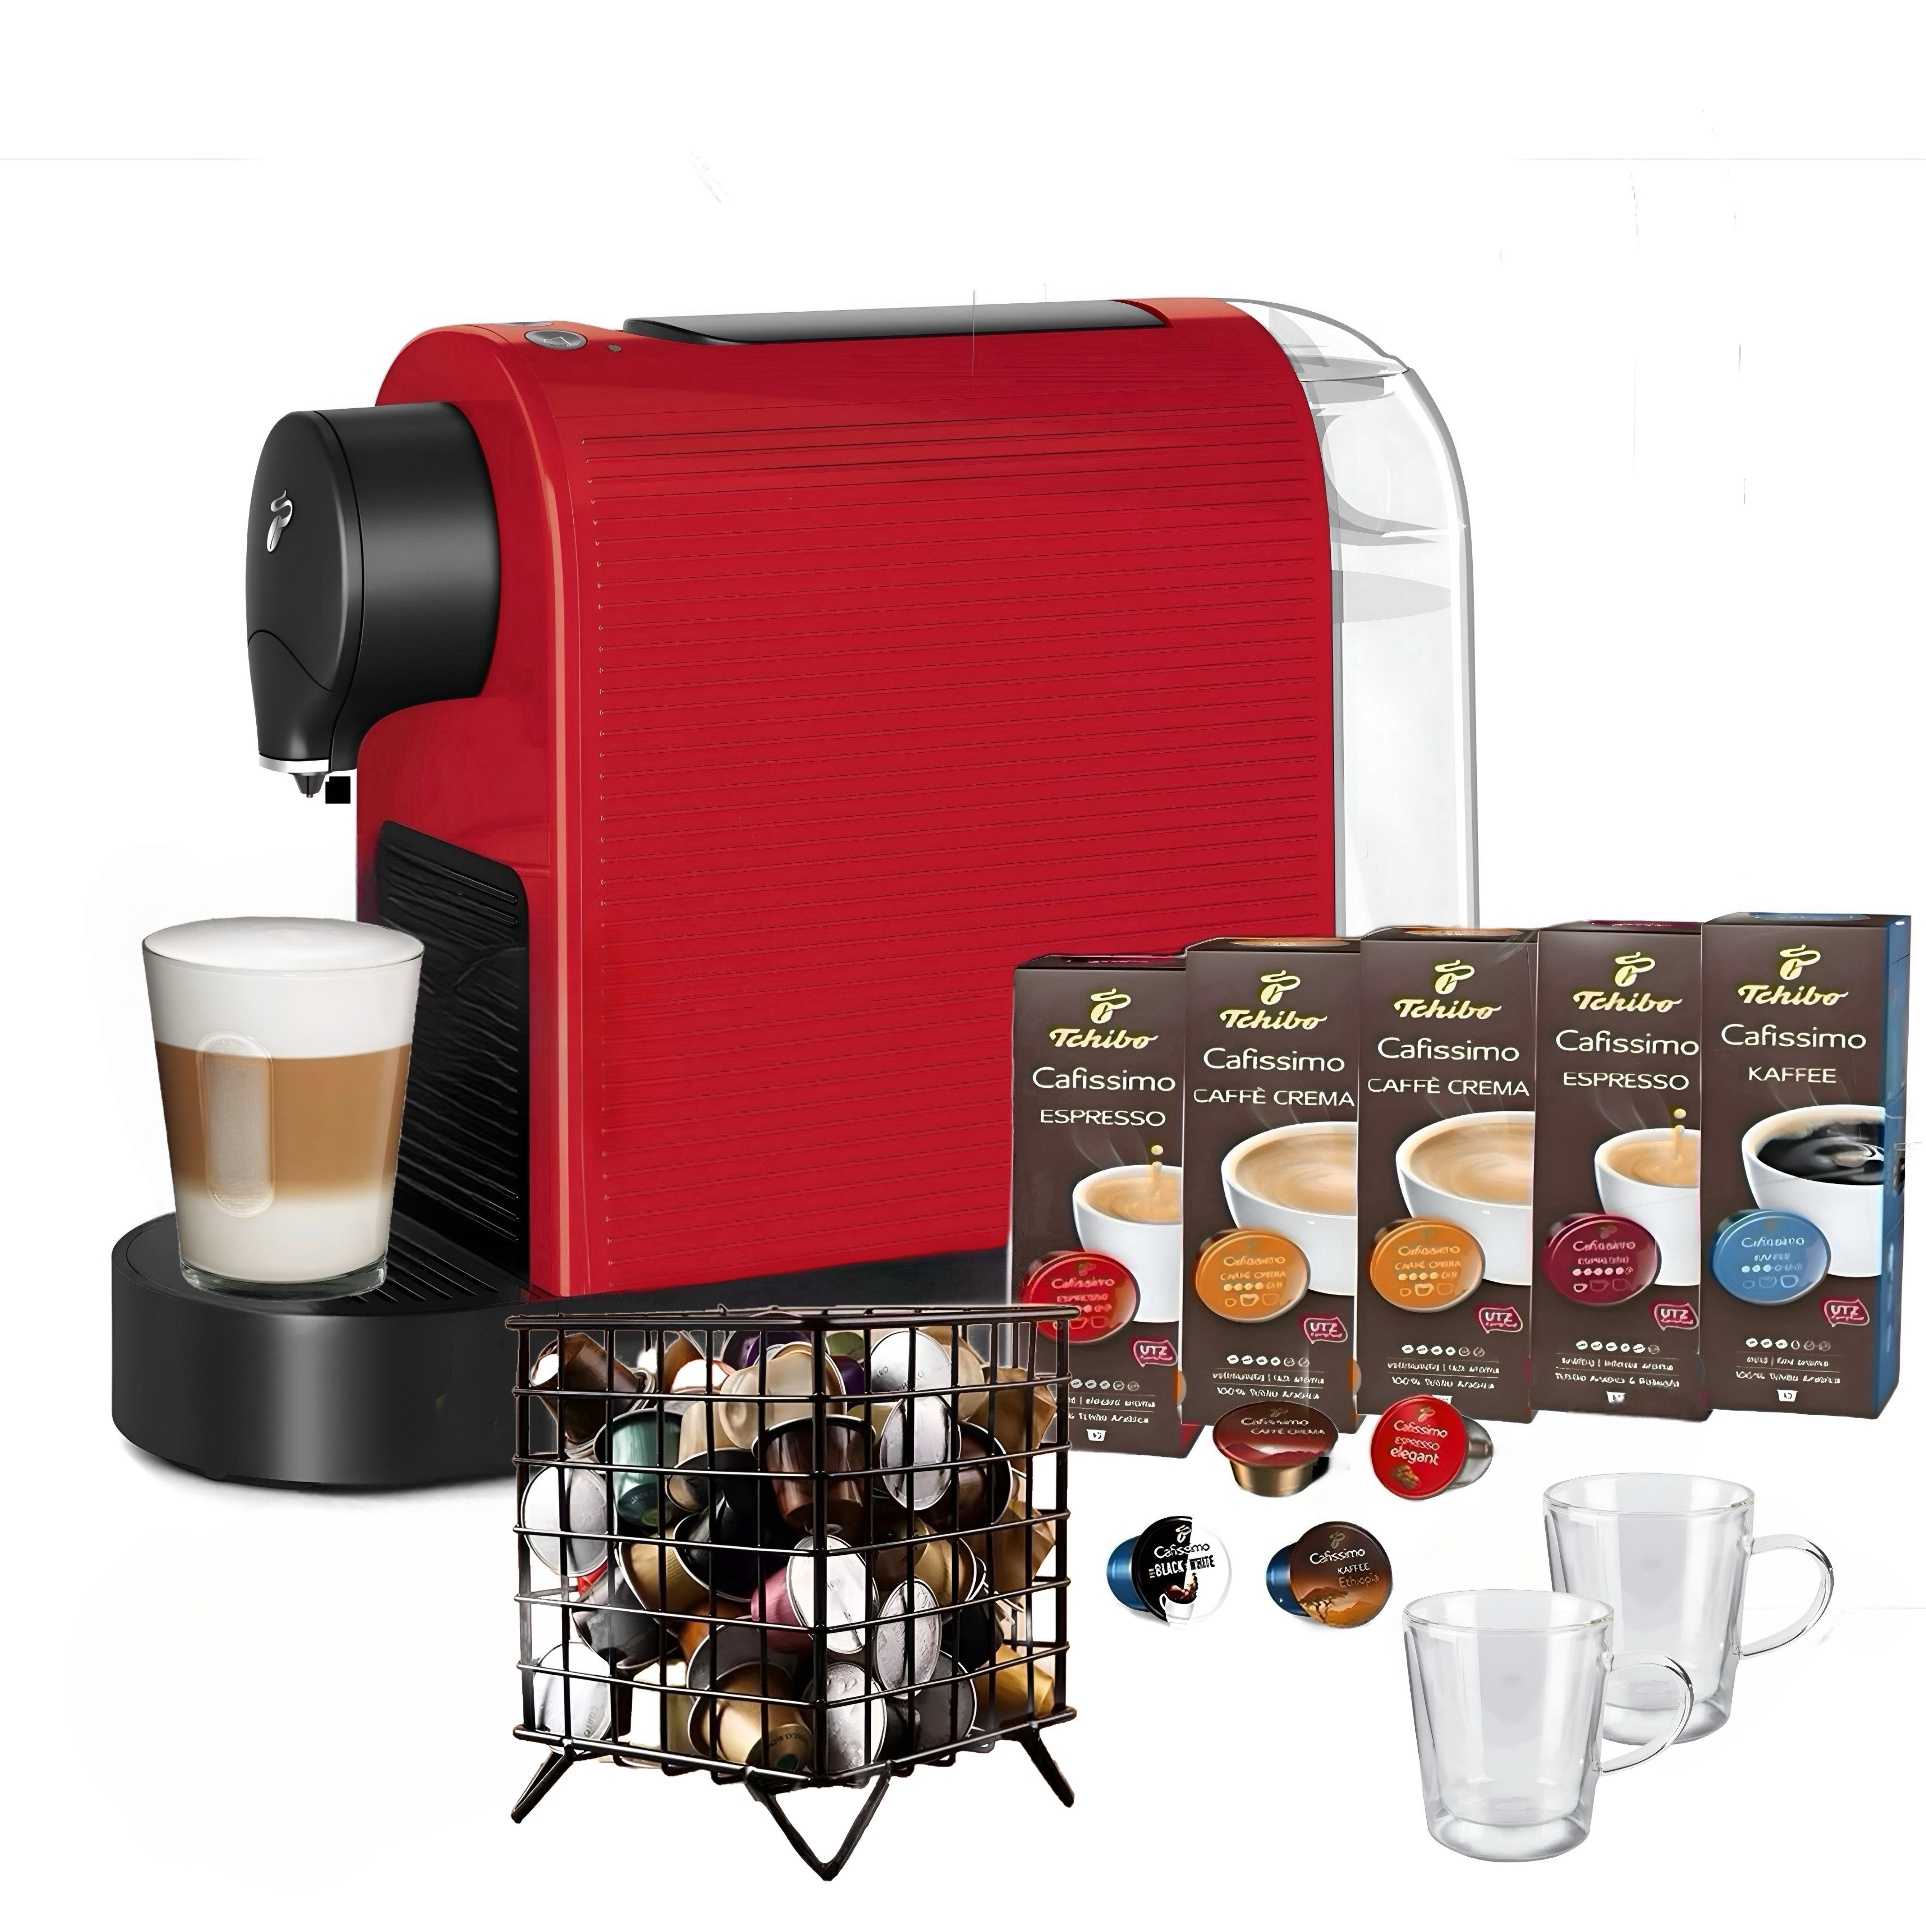 Tchibo Kapselmaschine Beste Kaffee CAFISSIMO + 50 Kapseln Kapselspender 2 Espresso Gläser, Beste Kaffee, Espresso, Caffè Crema, Kaffee Kapsel, Kaffeekapsel Ständer aus hochwertigem Stahl, Kaffeevollautomat, Kaffee Maschinen, Kapselkaffee, Kaffeemaschine